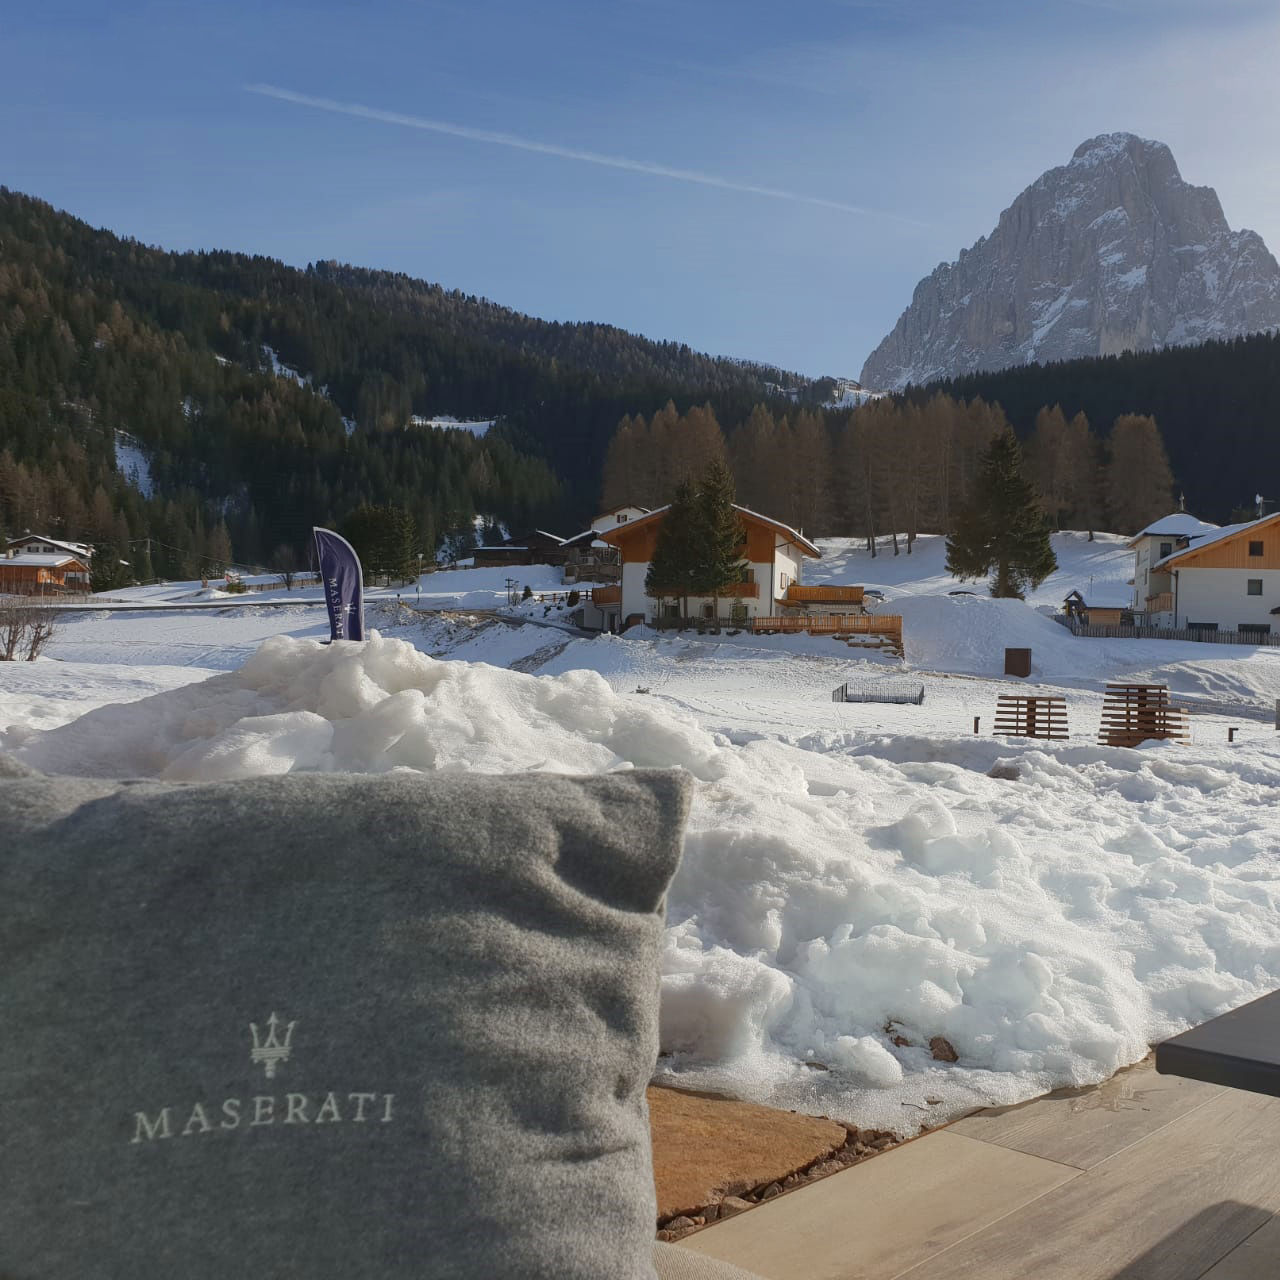 Maserati Winter Experience 2019 - Accessori Maserati